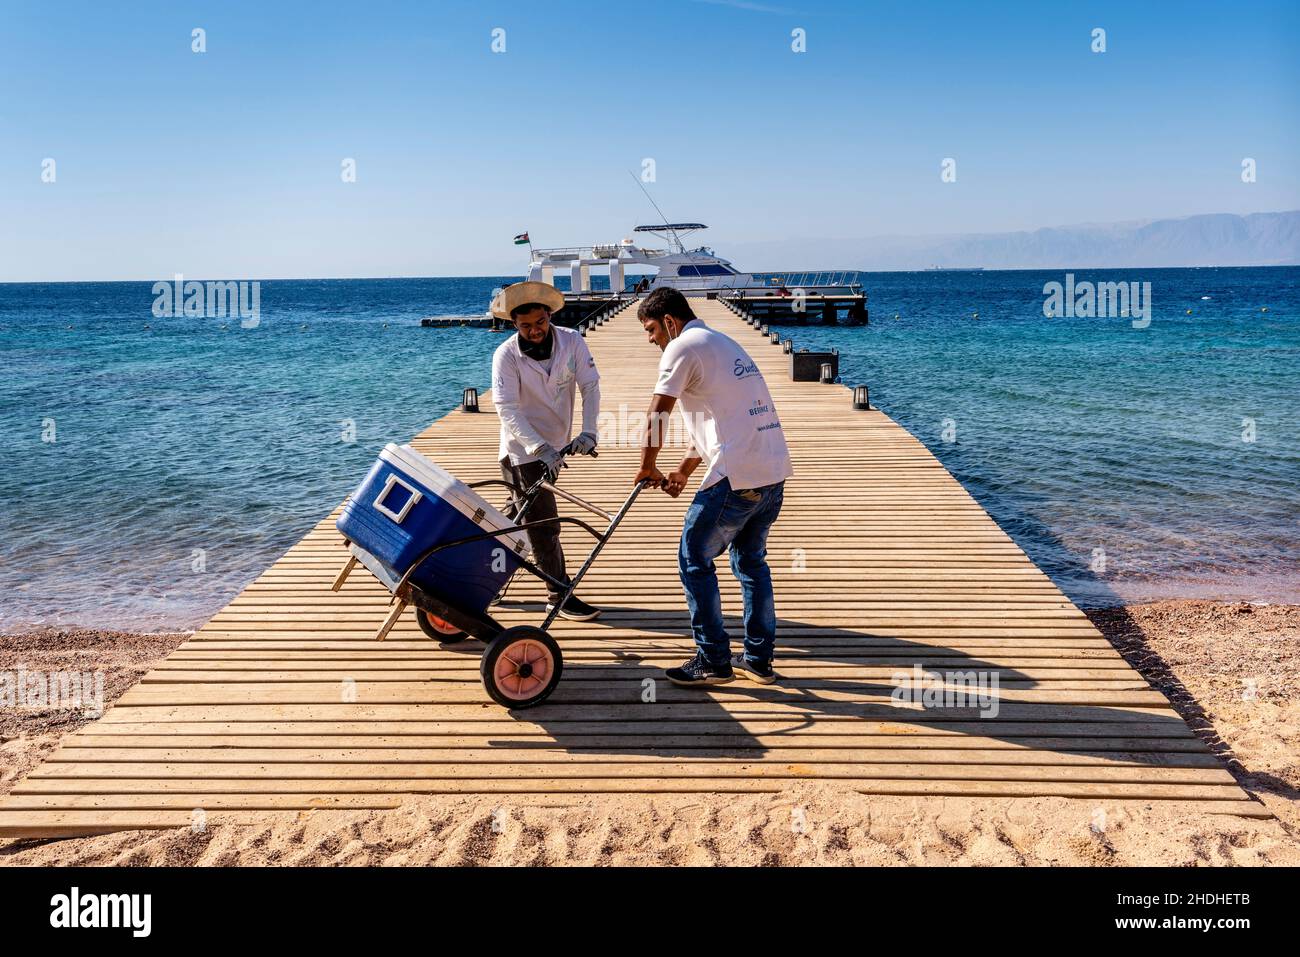 Dos hombres en un embarcadero que llevan suministros a un barco turístico en el Berenice Beach Club, Aqaba, provincia de Aqaba, Jordania. Foto de stock